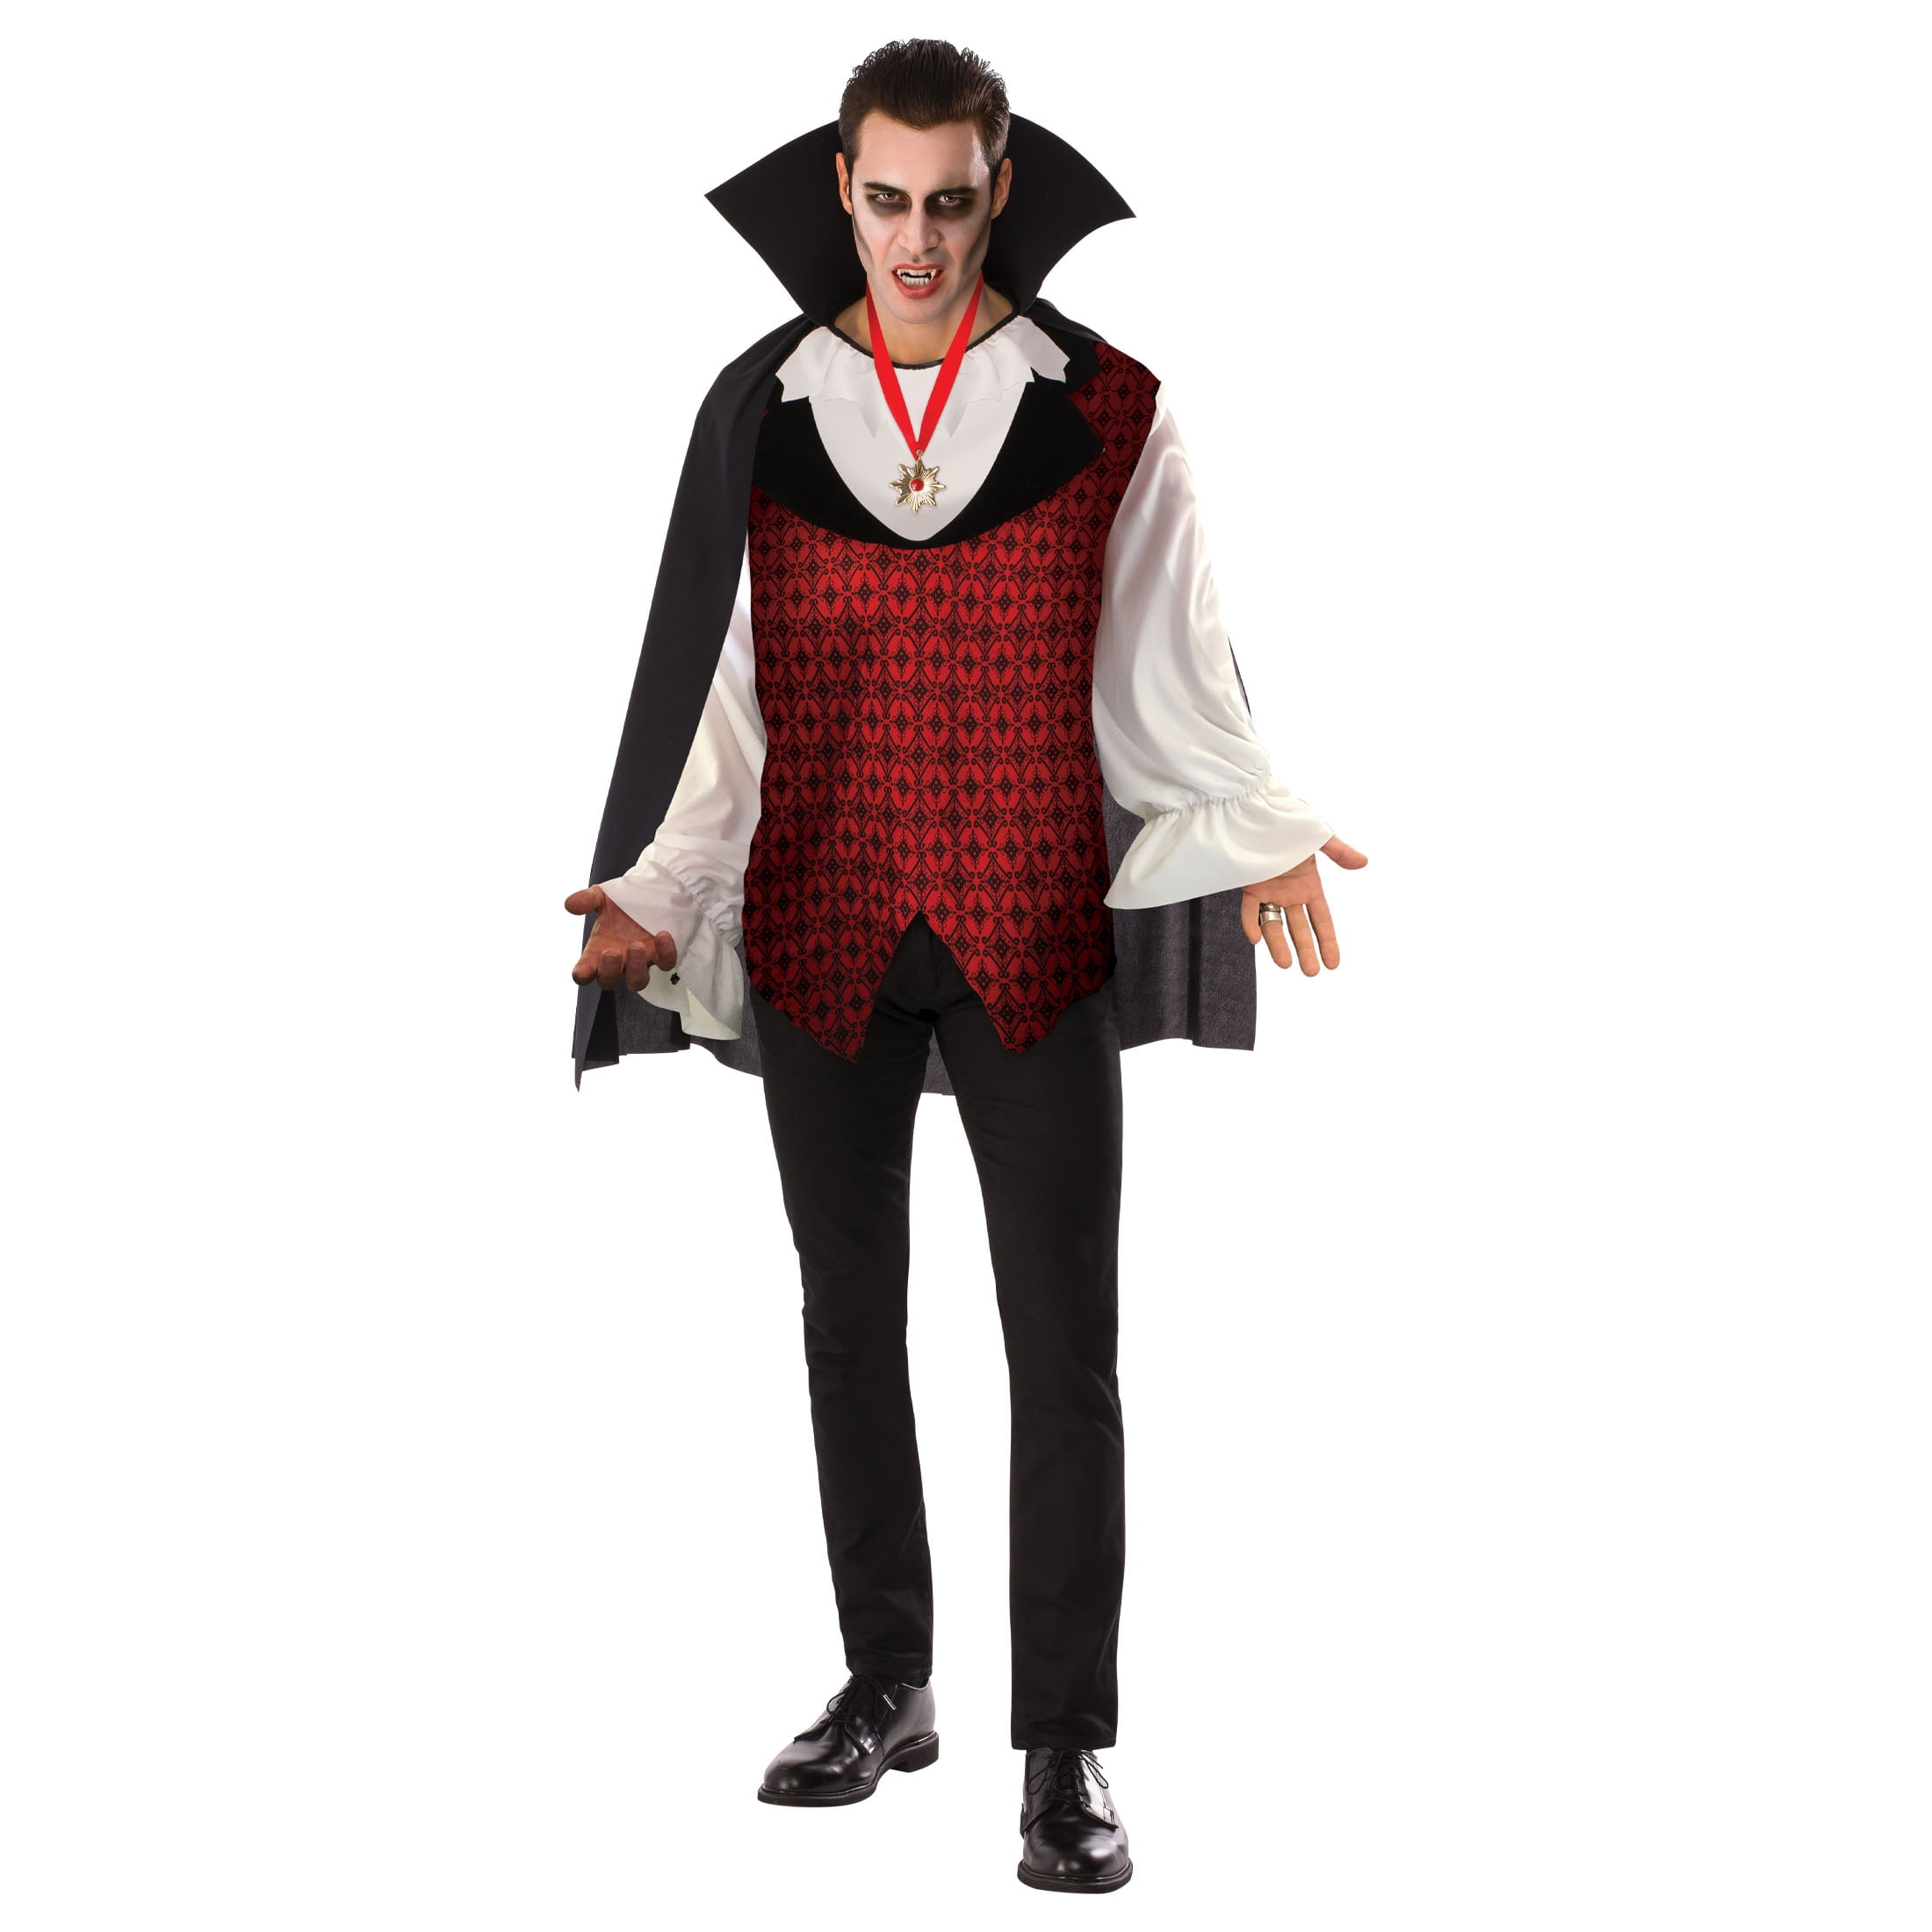 Vampire Men's Halloween Costume M by Rubies II - Walmart.com